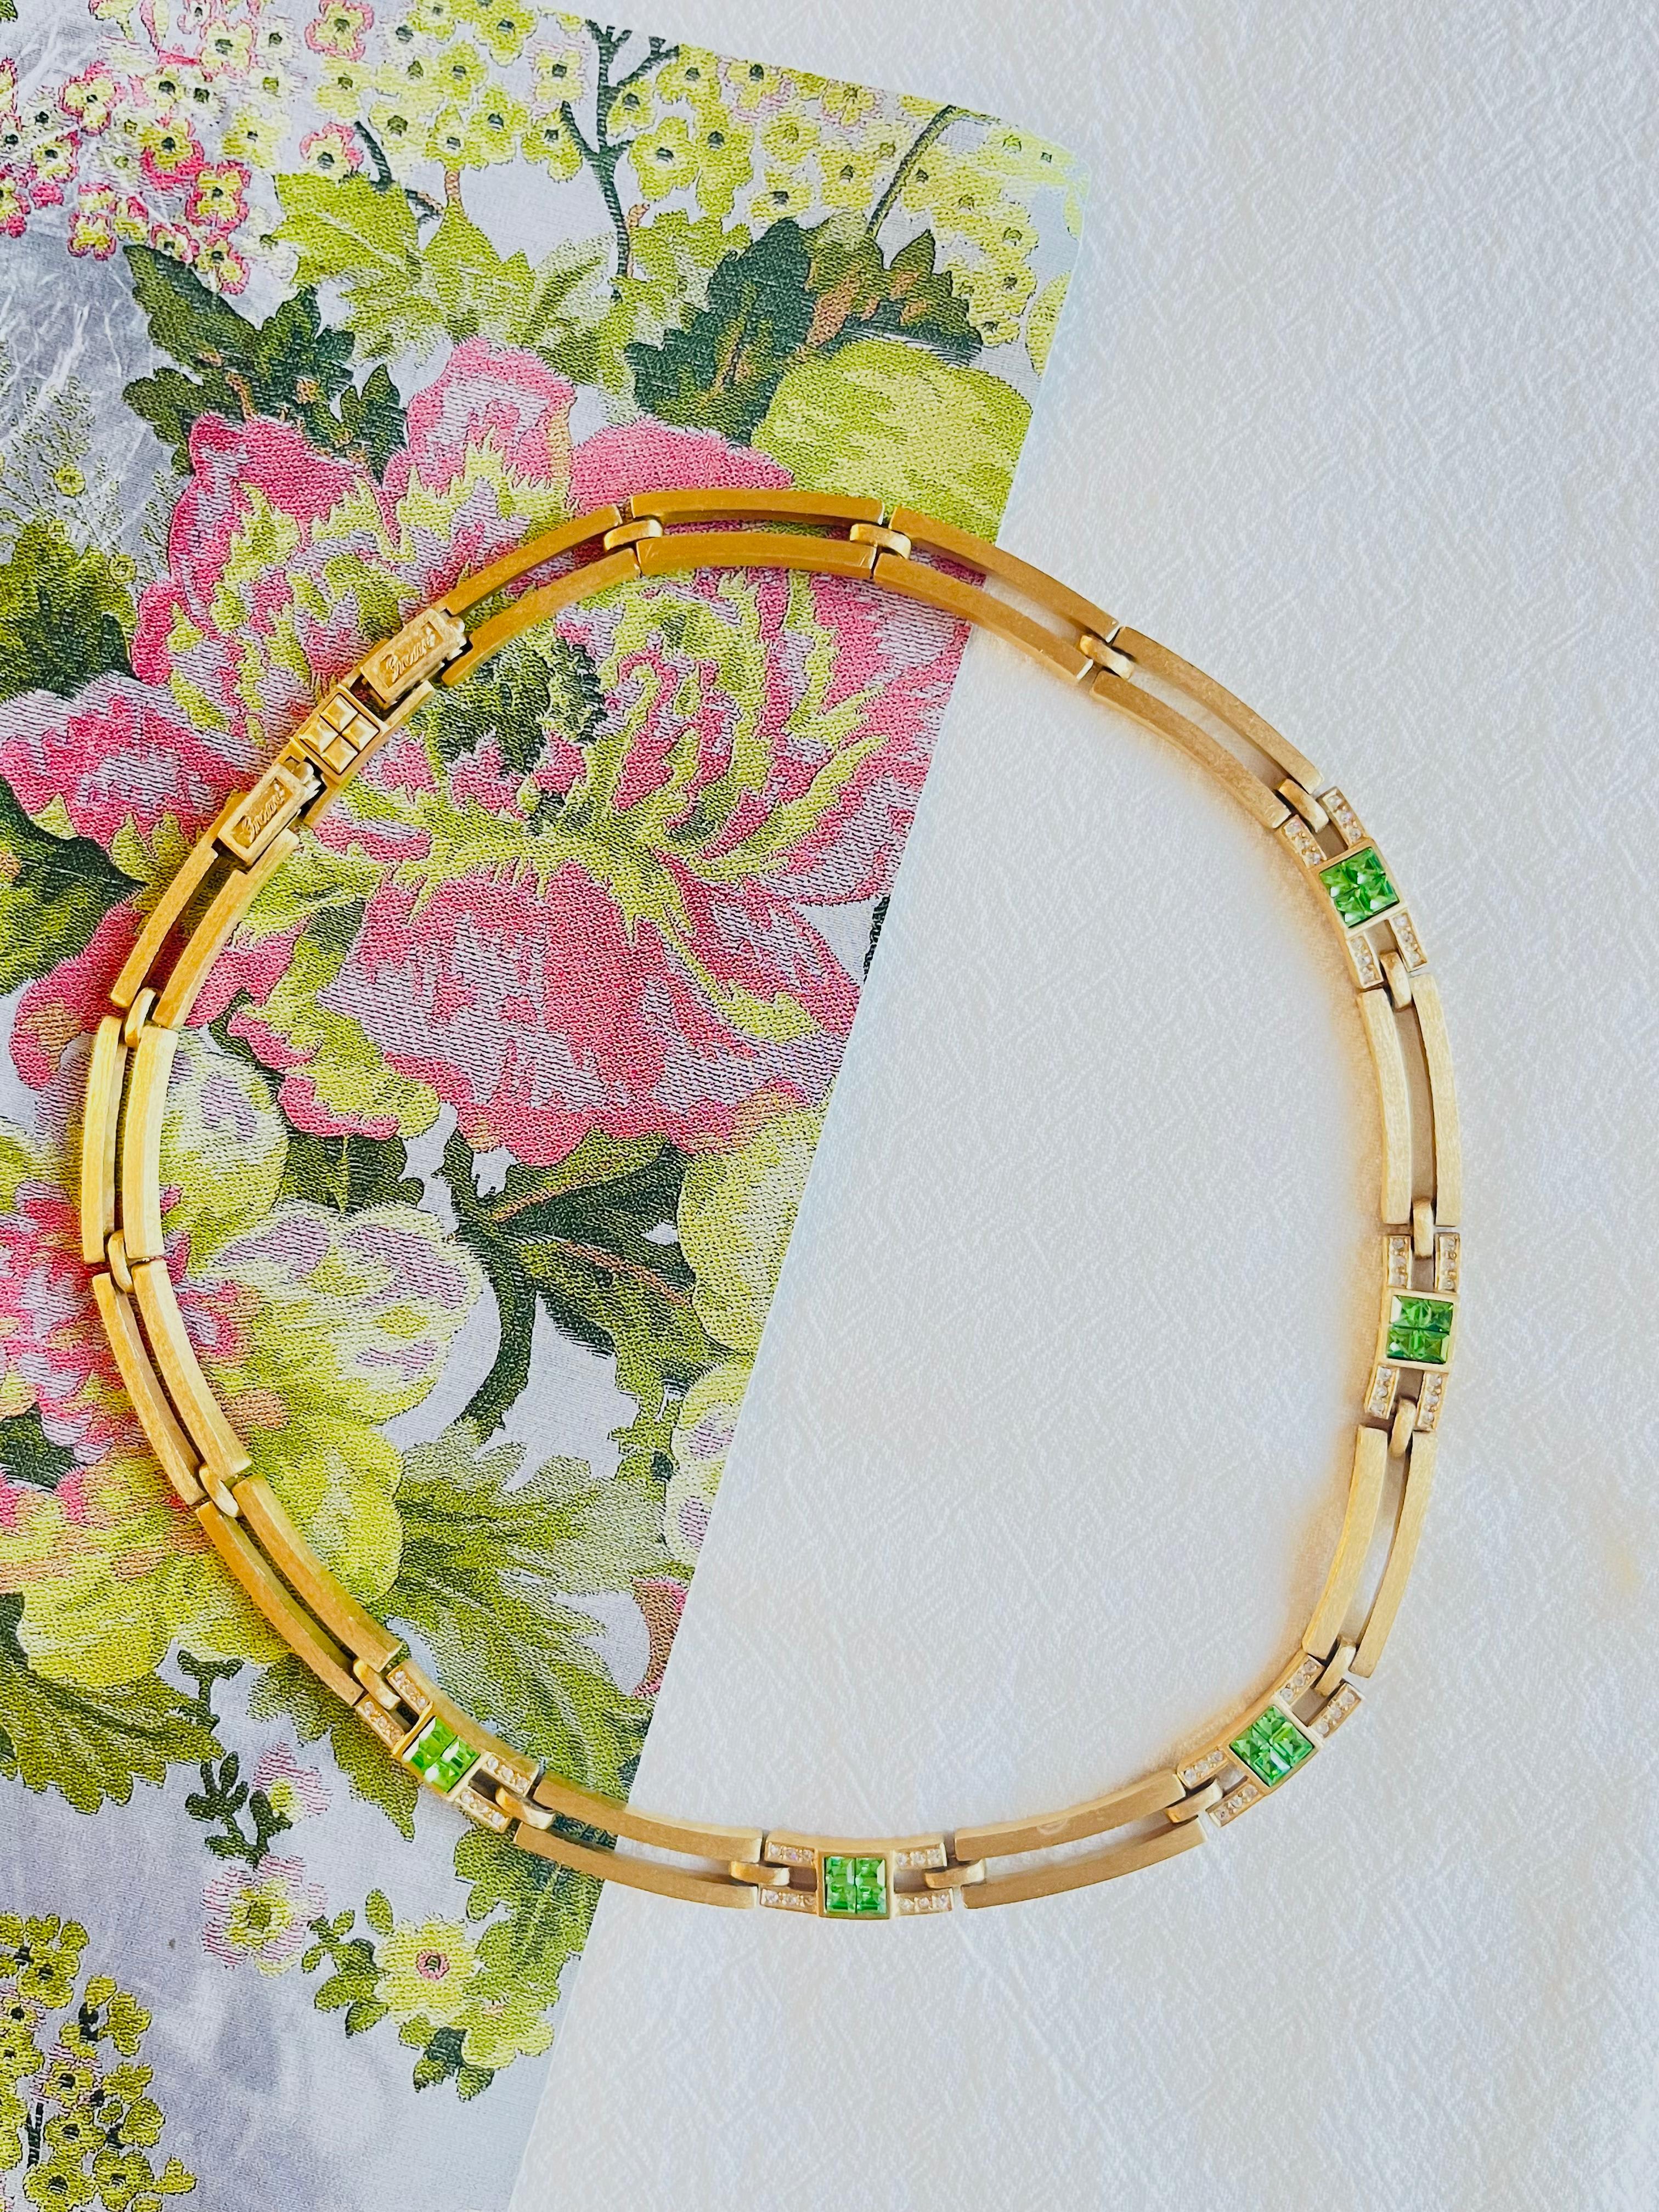 Christian Dior GROSSE 1970er Vintage durchbrochene Halskette mit smaragdgrünen quadratischen Kristallen, vergoldet

Sehr guter Zustand. 100% echt. Selten zu finden.

Signiert Grosse auf der Rückseite.

Größe:  40 cm. Kette verlängern: 2